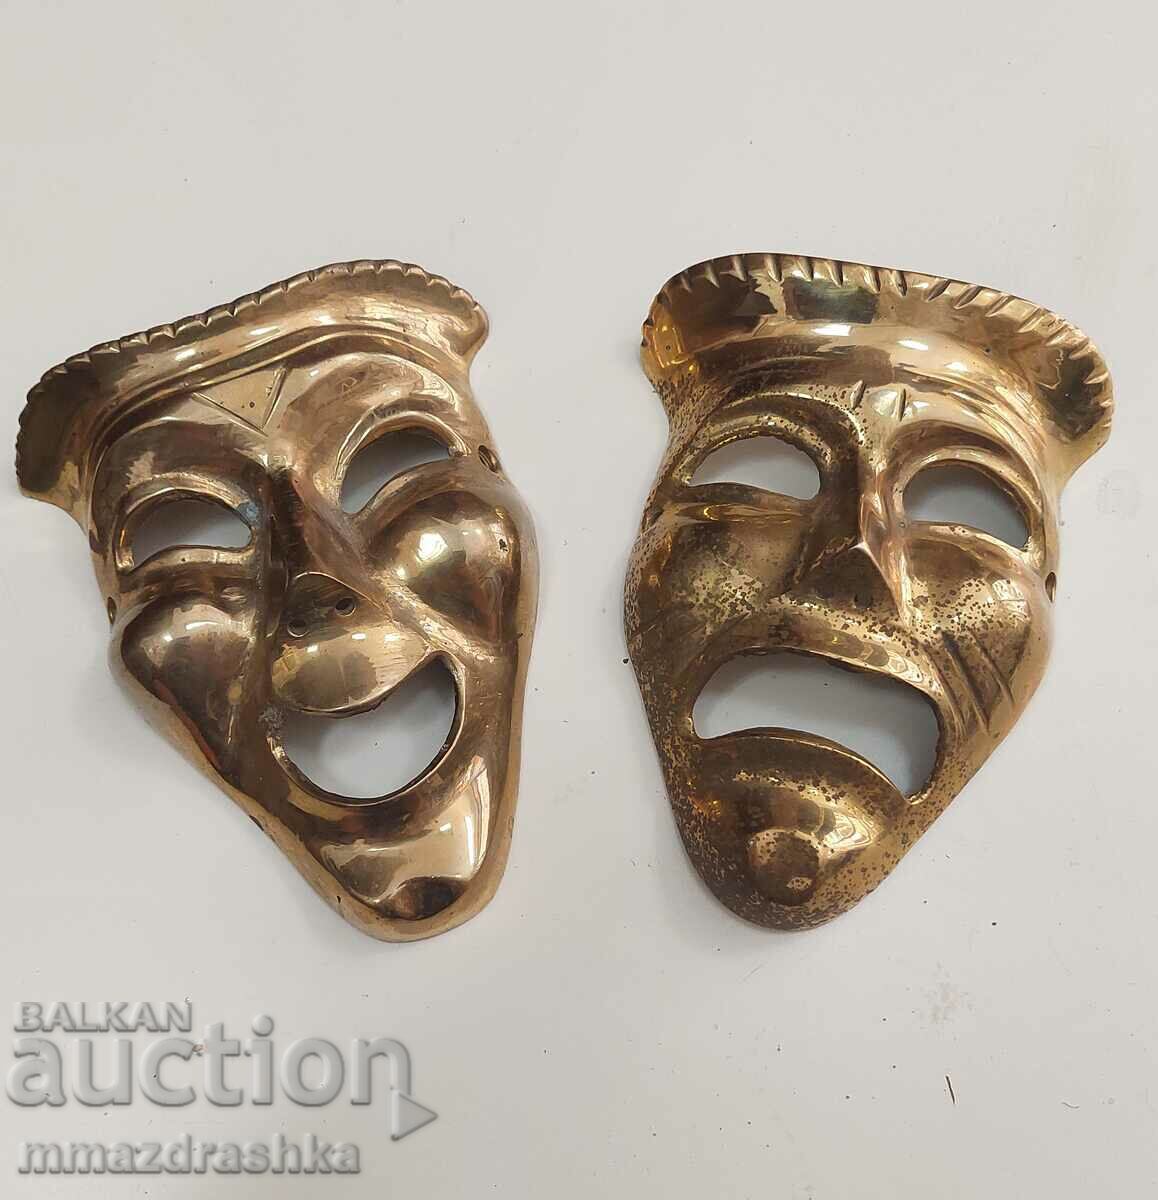 Brass masks